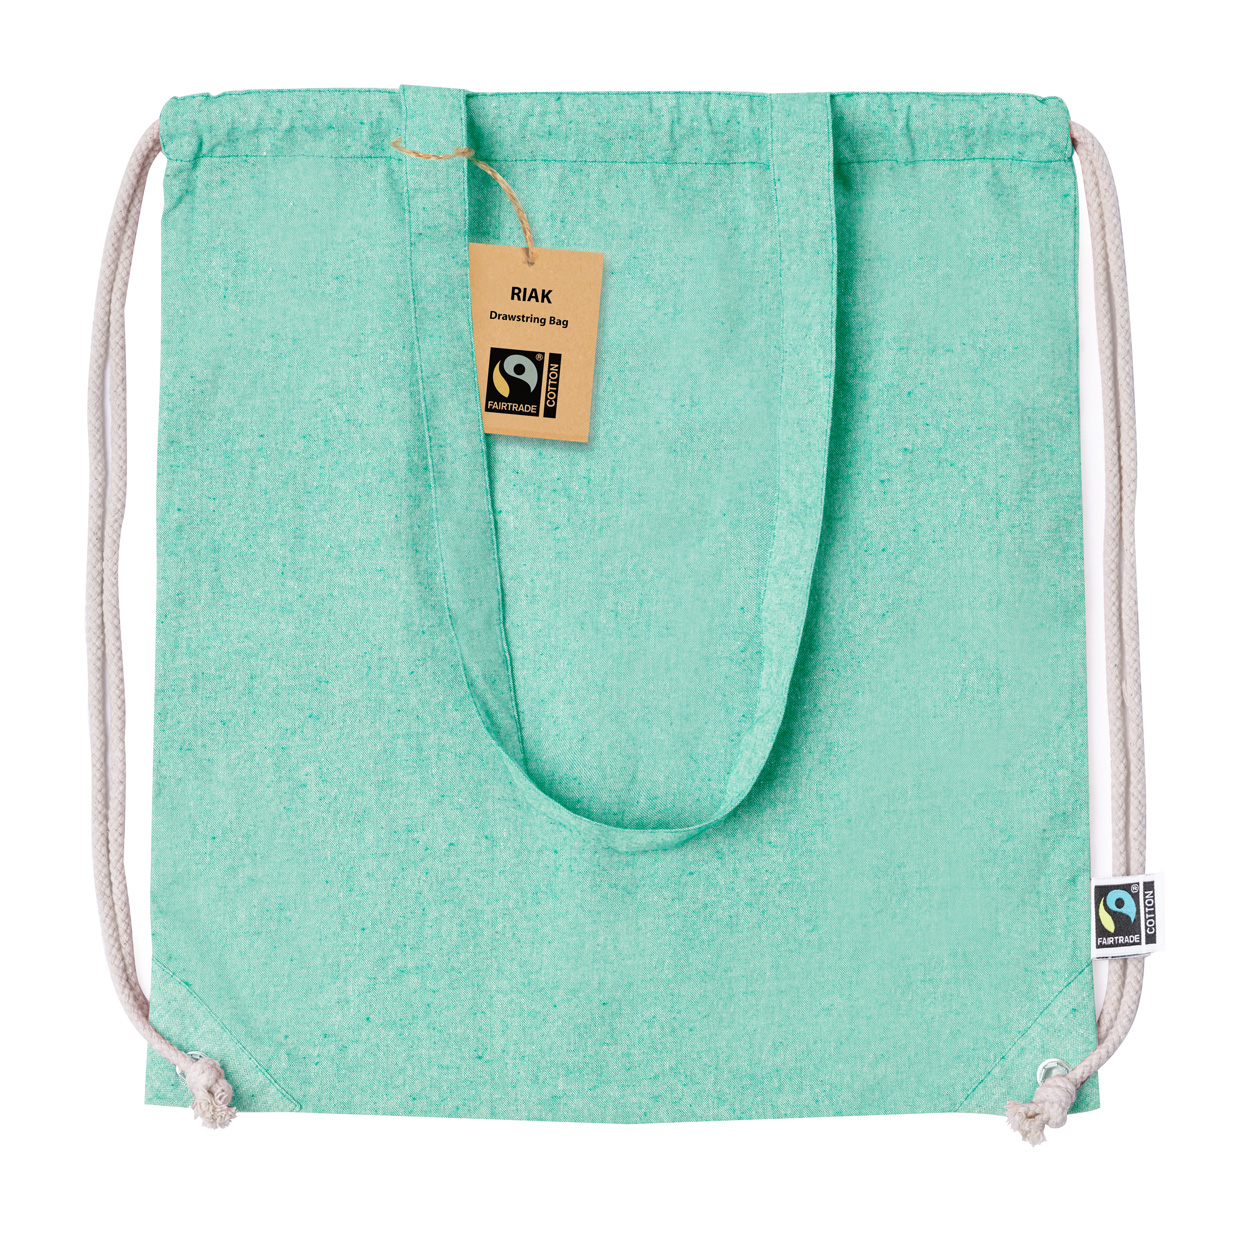 Riak fairtrade downloadable bag - green